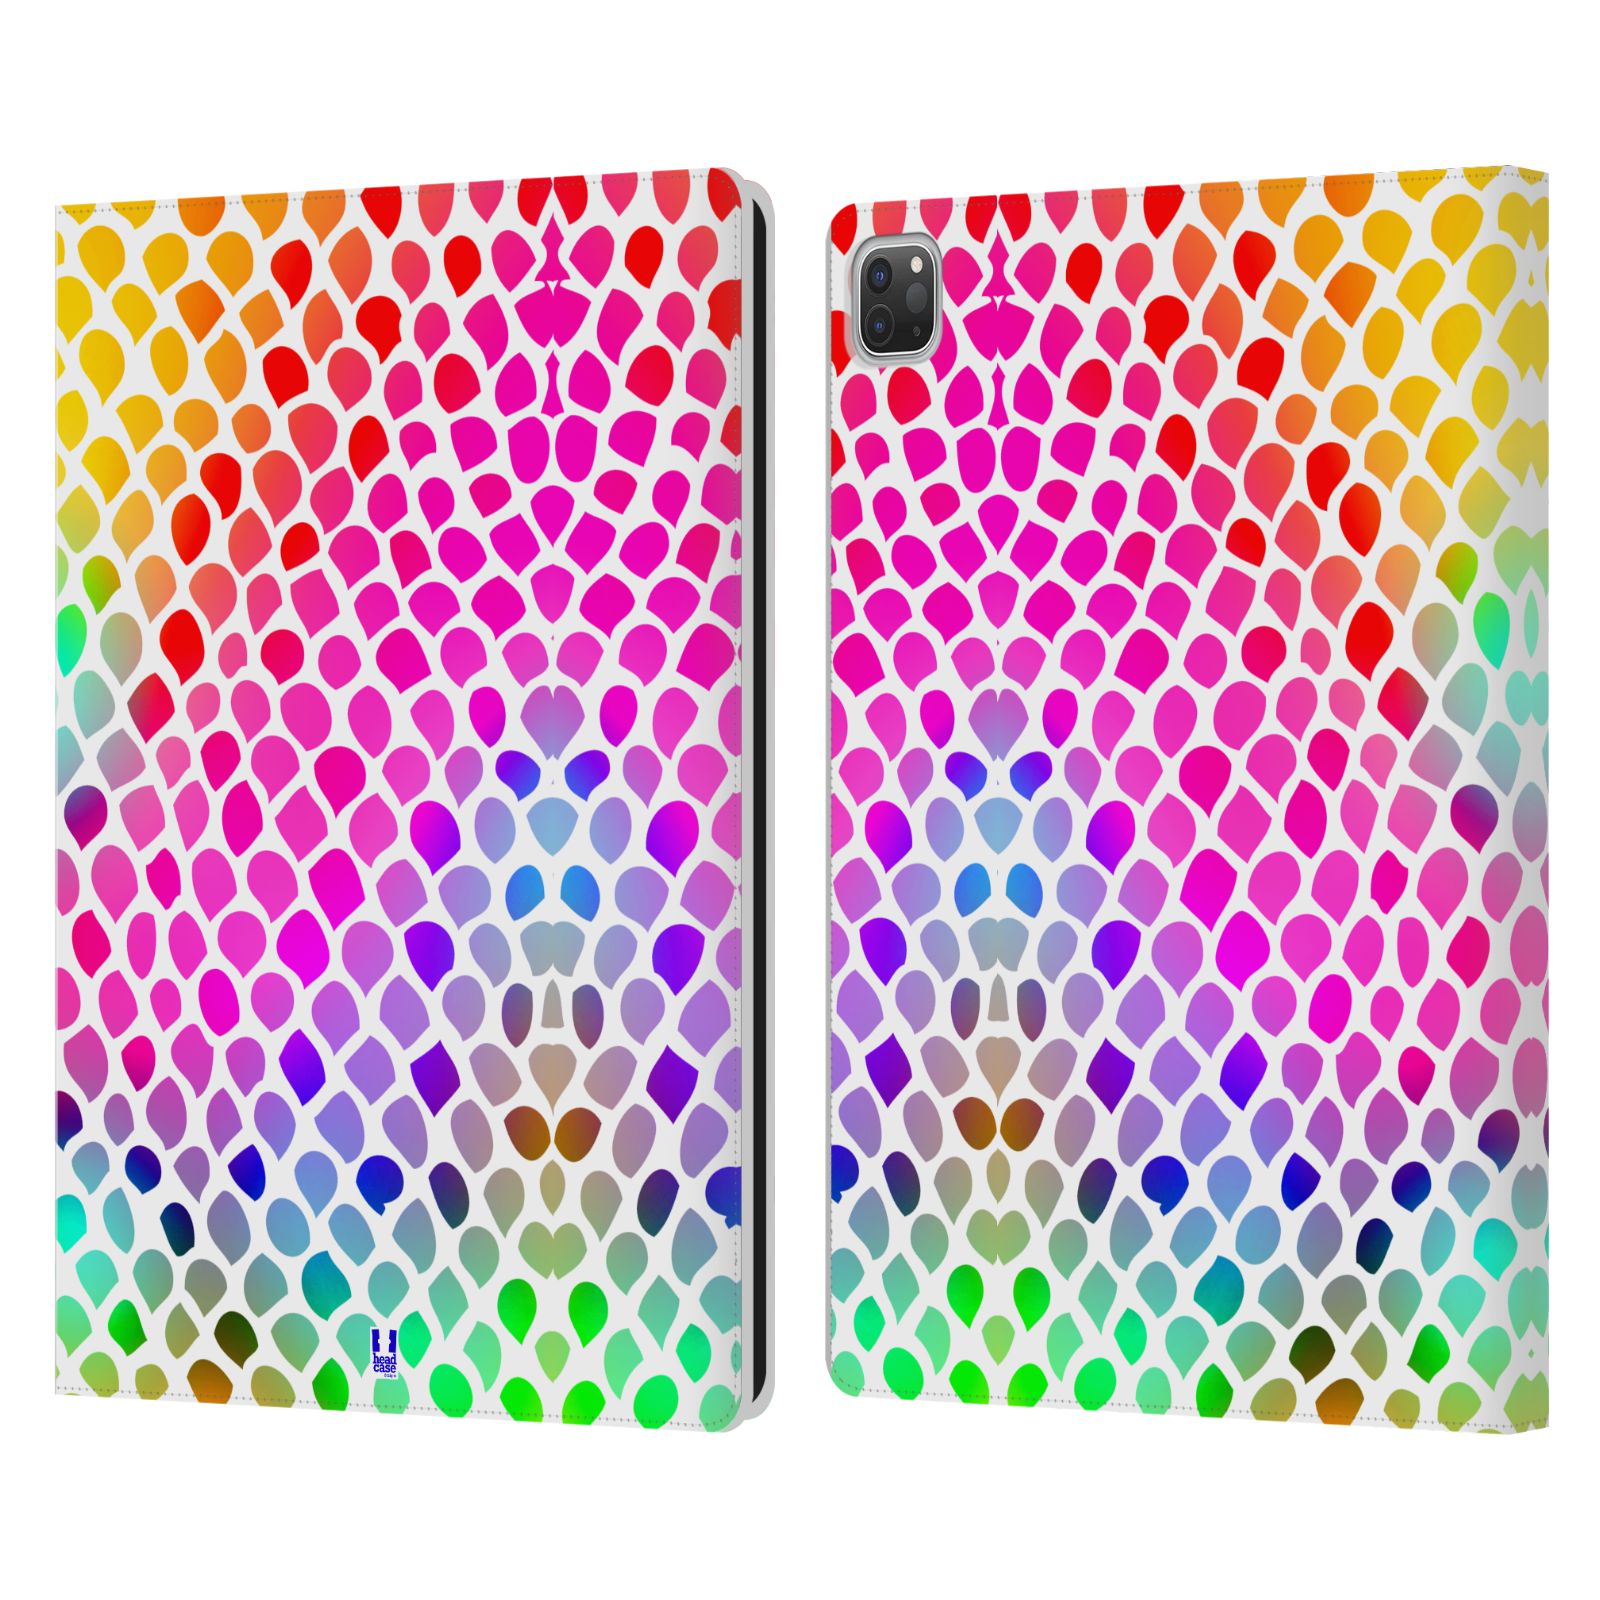 Pouzdro pro tablet Apple Ipad Pro 12.9 - HEAD CASE - Zvířecí barevné vzory duhový had